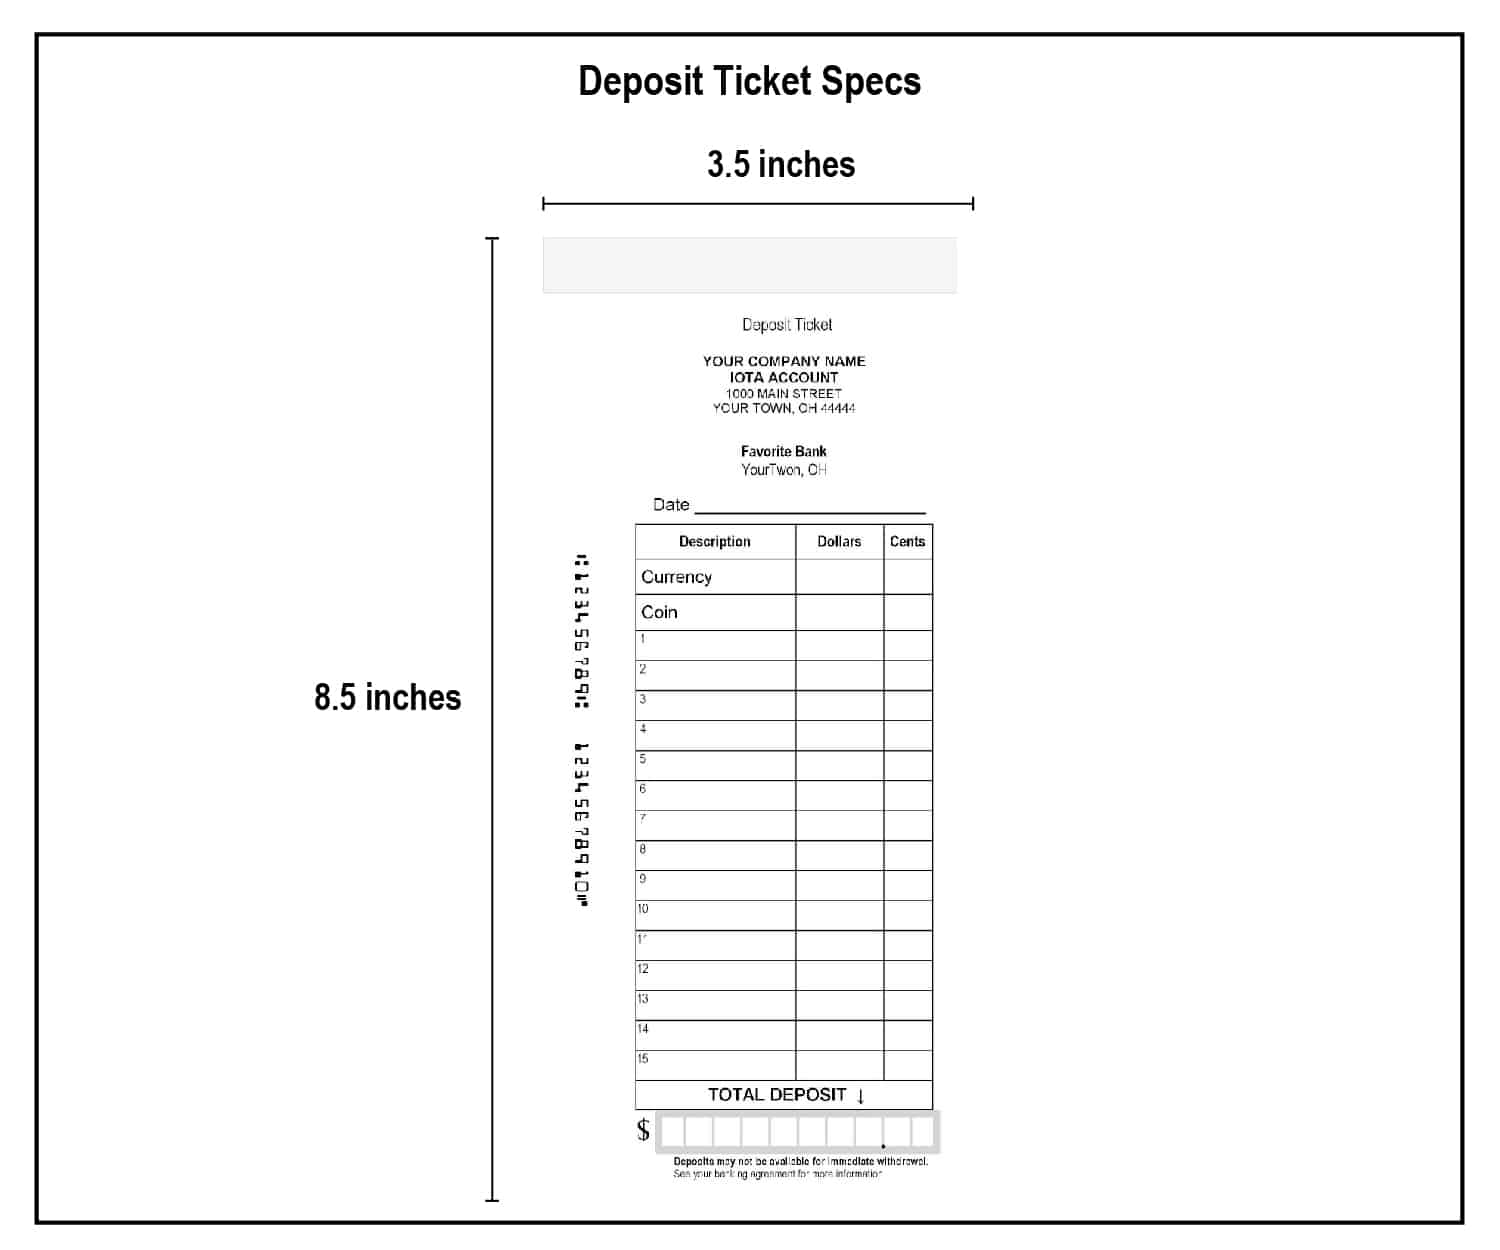 Deposit Ticket Specs